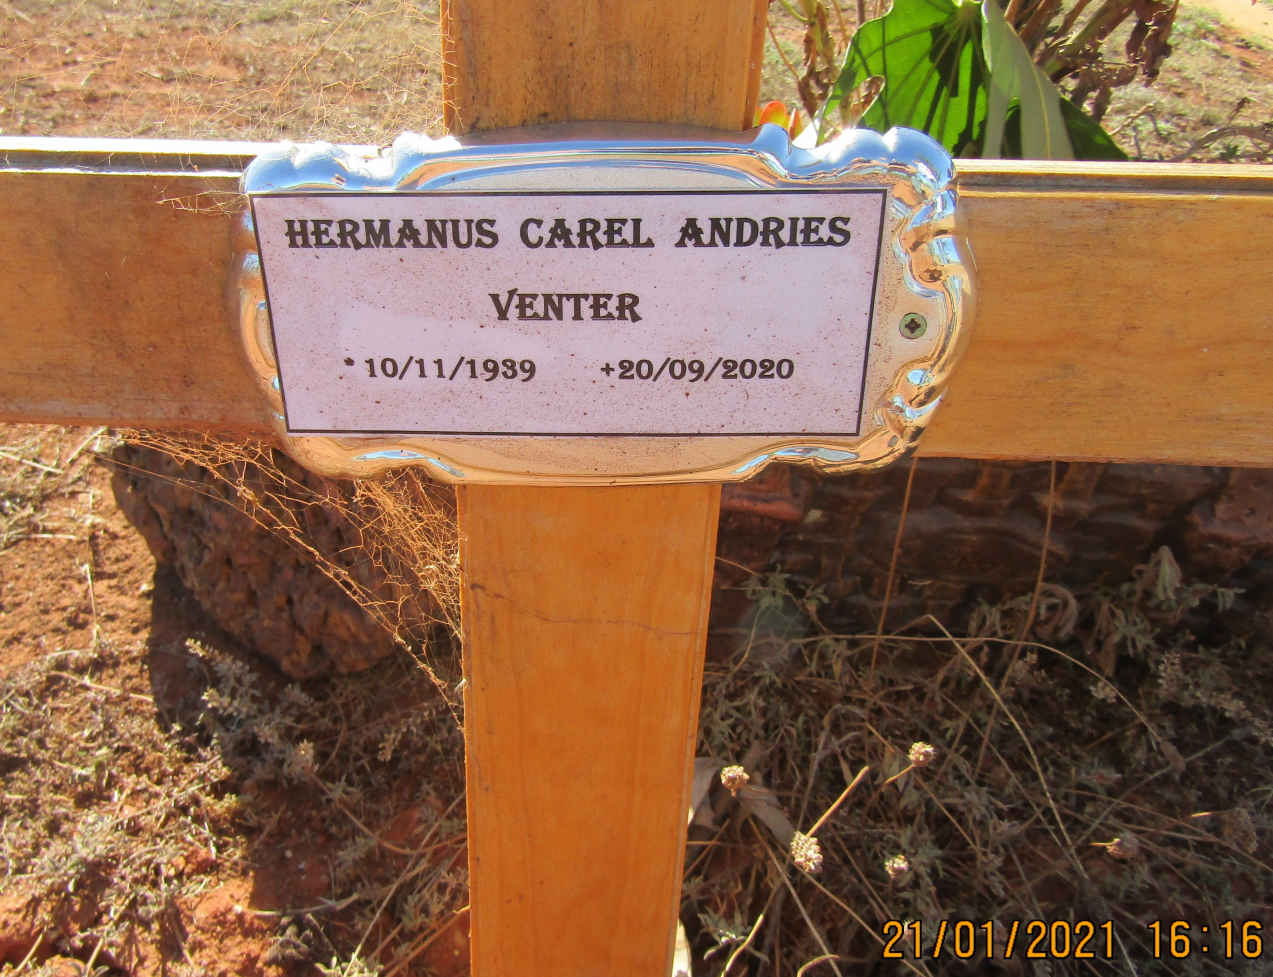 VENTER Hermanus Carel Andries 1989-2020